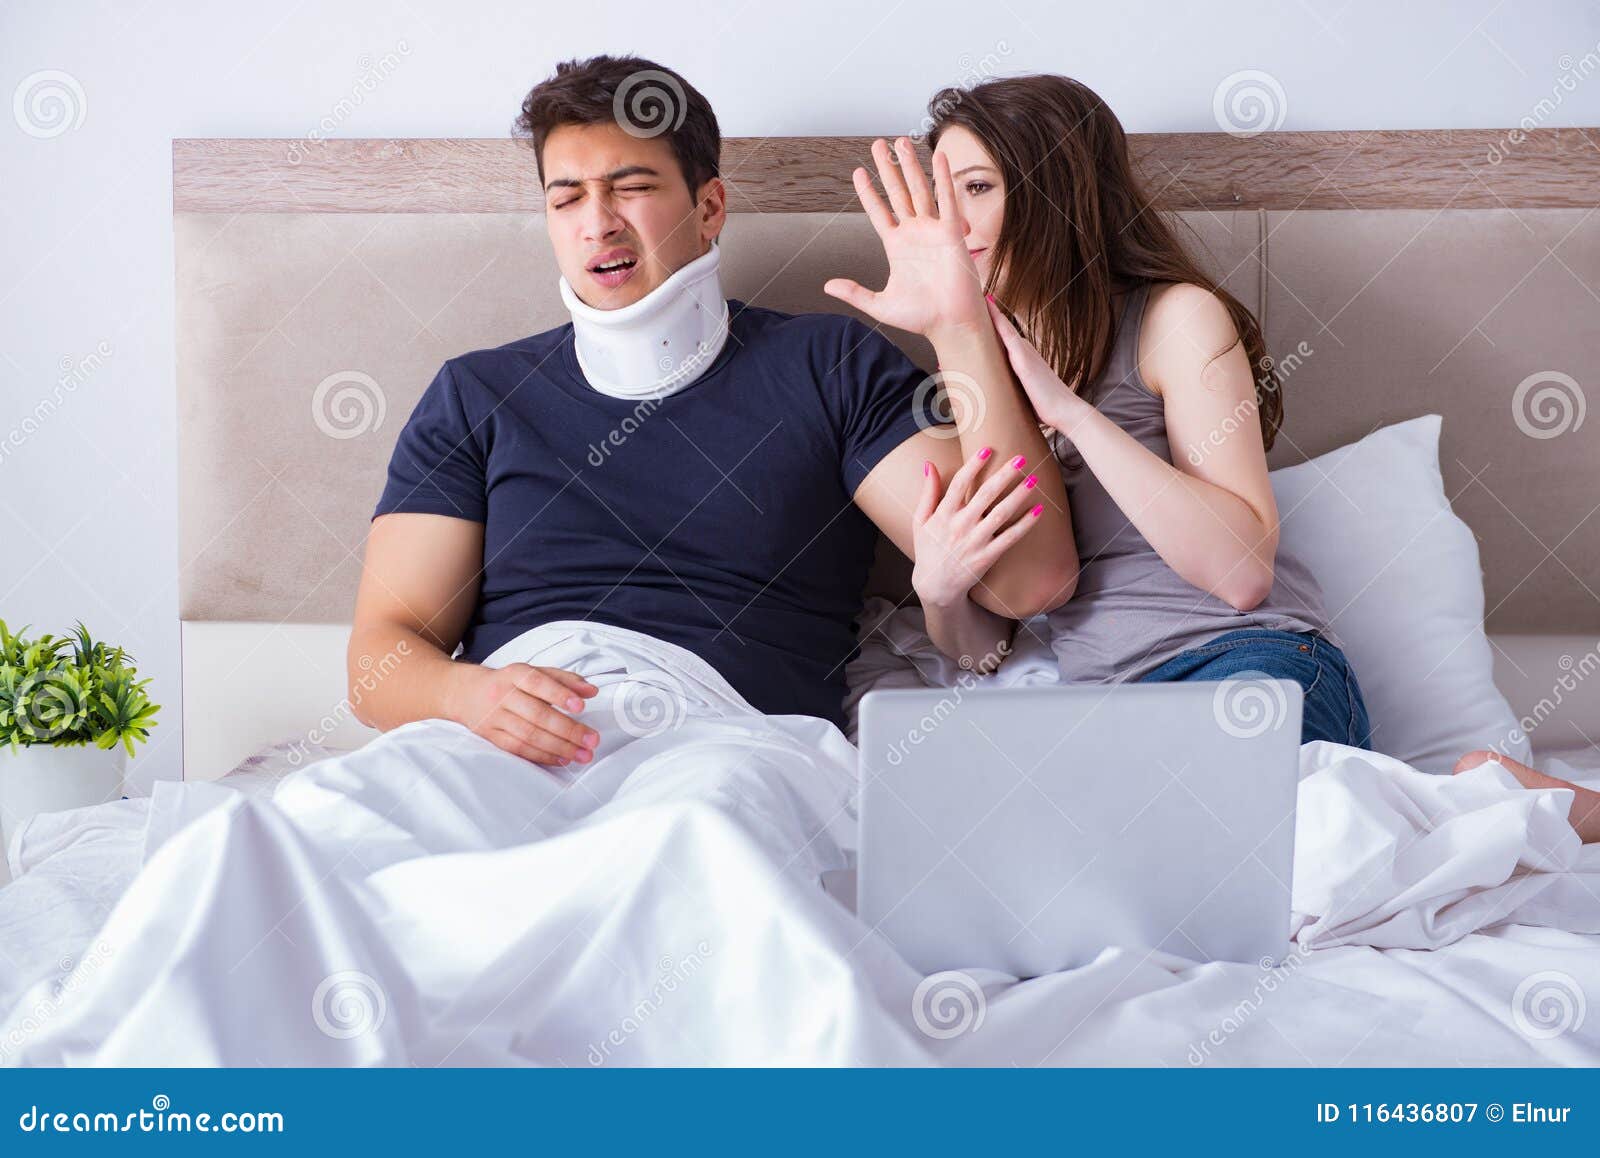 Муж в белье жены видео. Фото свадьбы муж раненый.